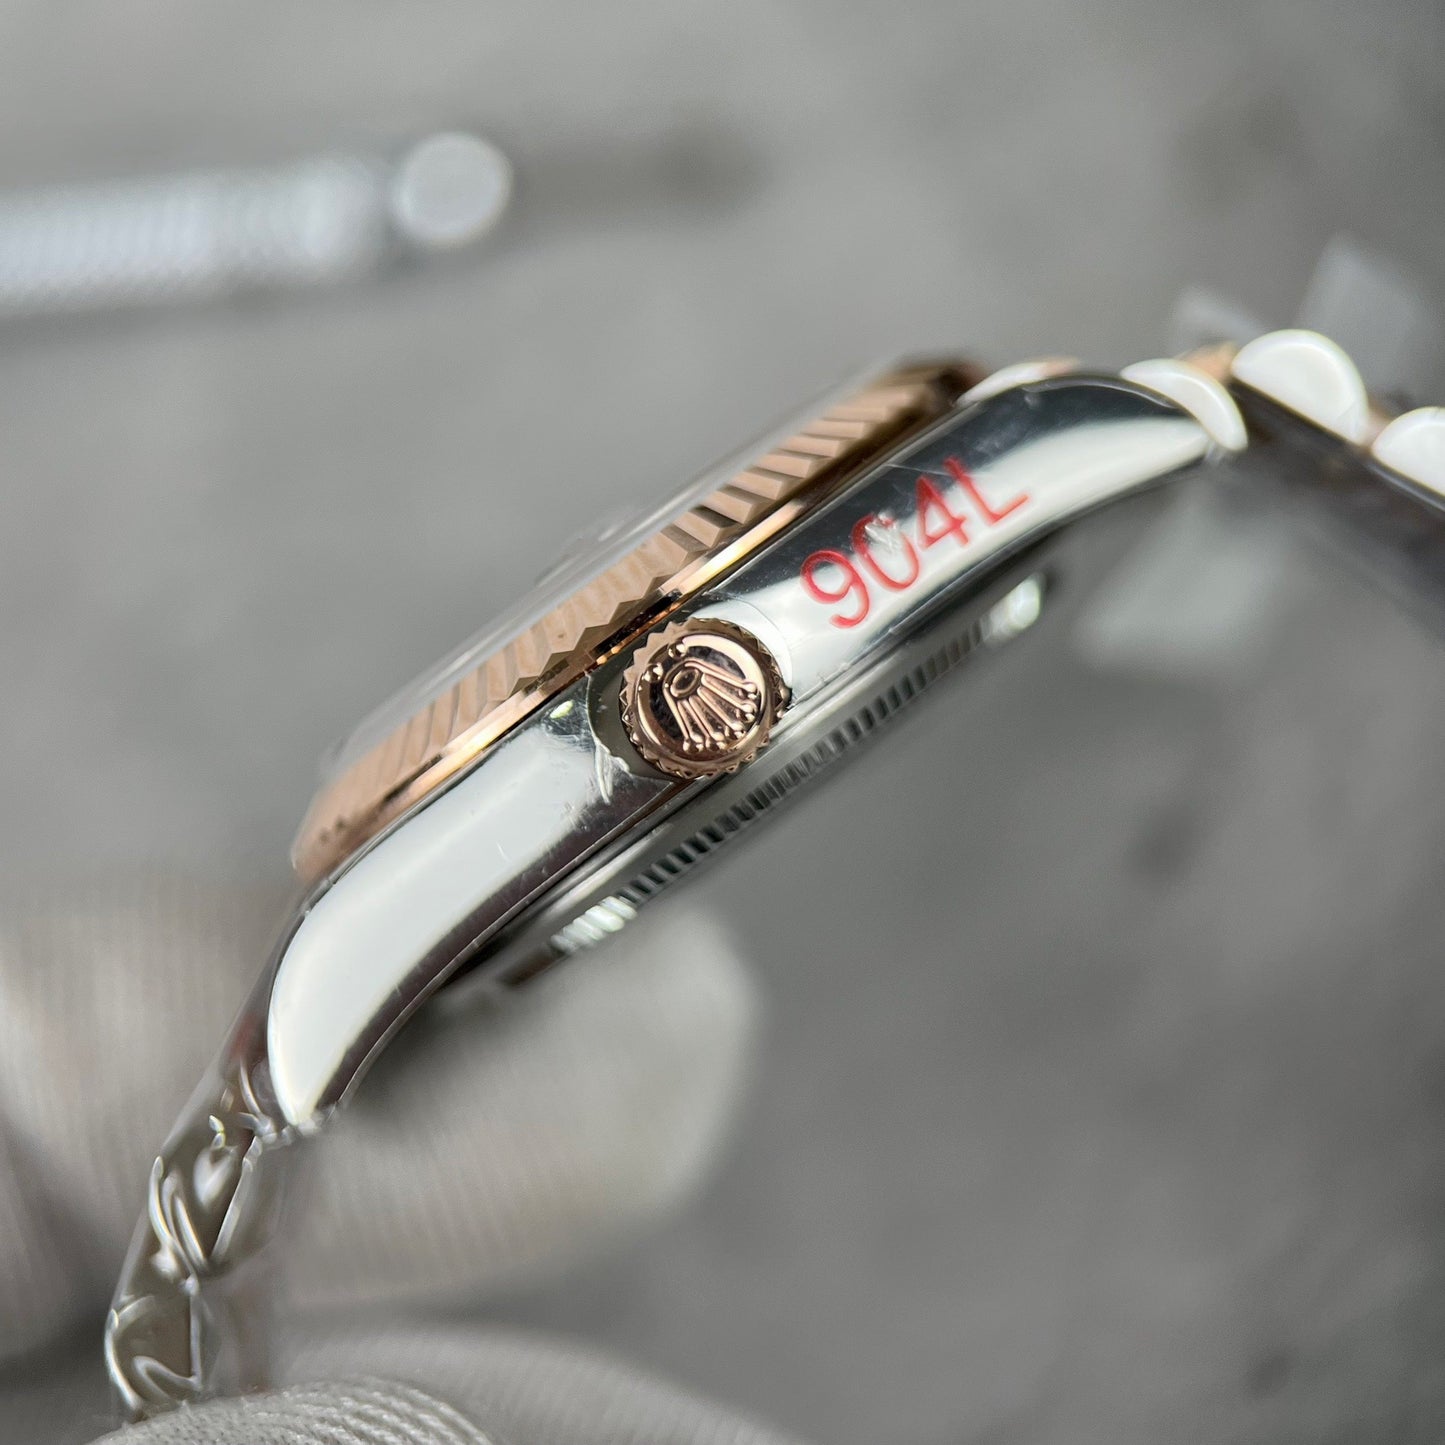 Rolex Datejust 31 Montre à cadran chocolat 178271 meilleure édition 1:1 en or rose recouvert de 18 carats GM